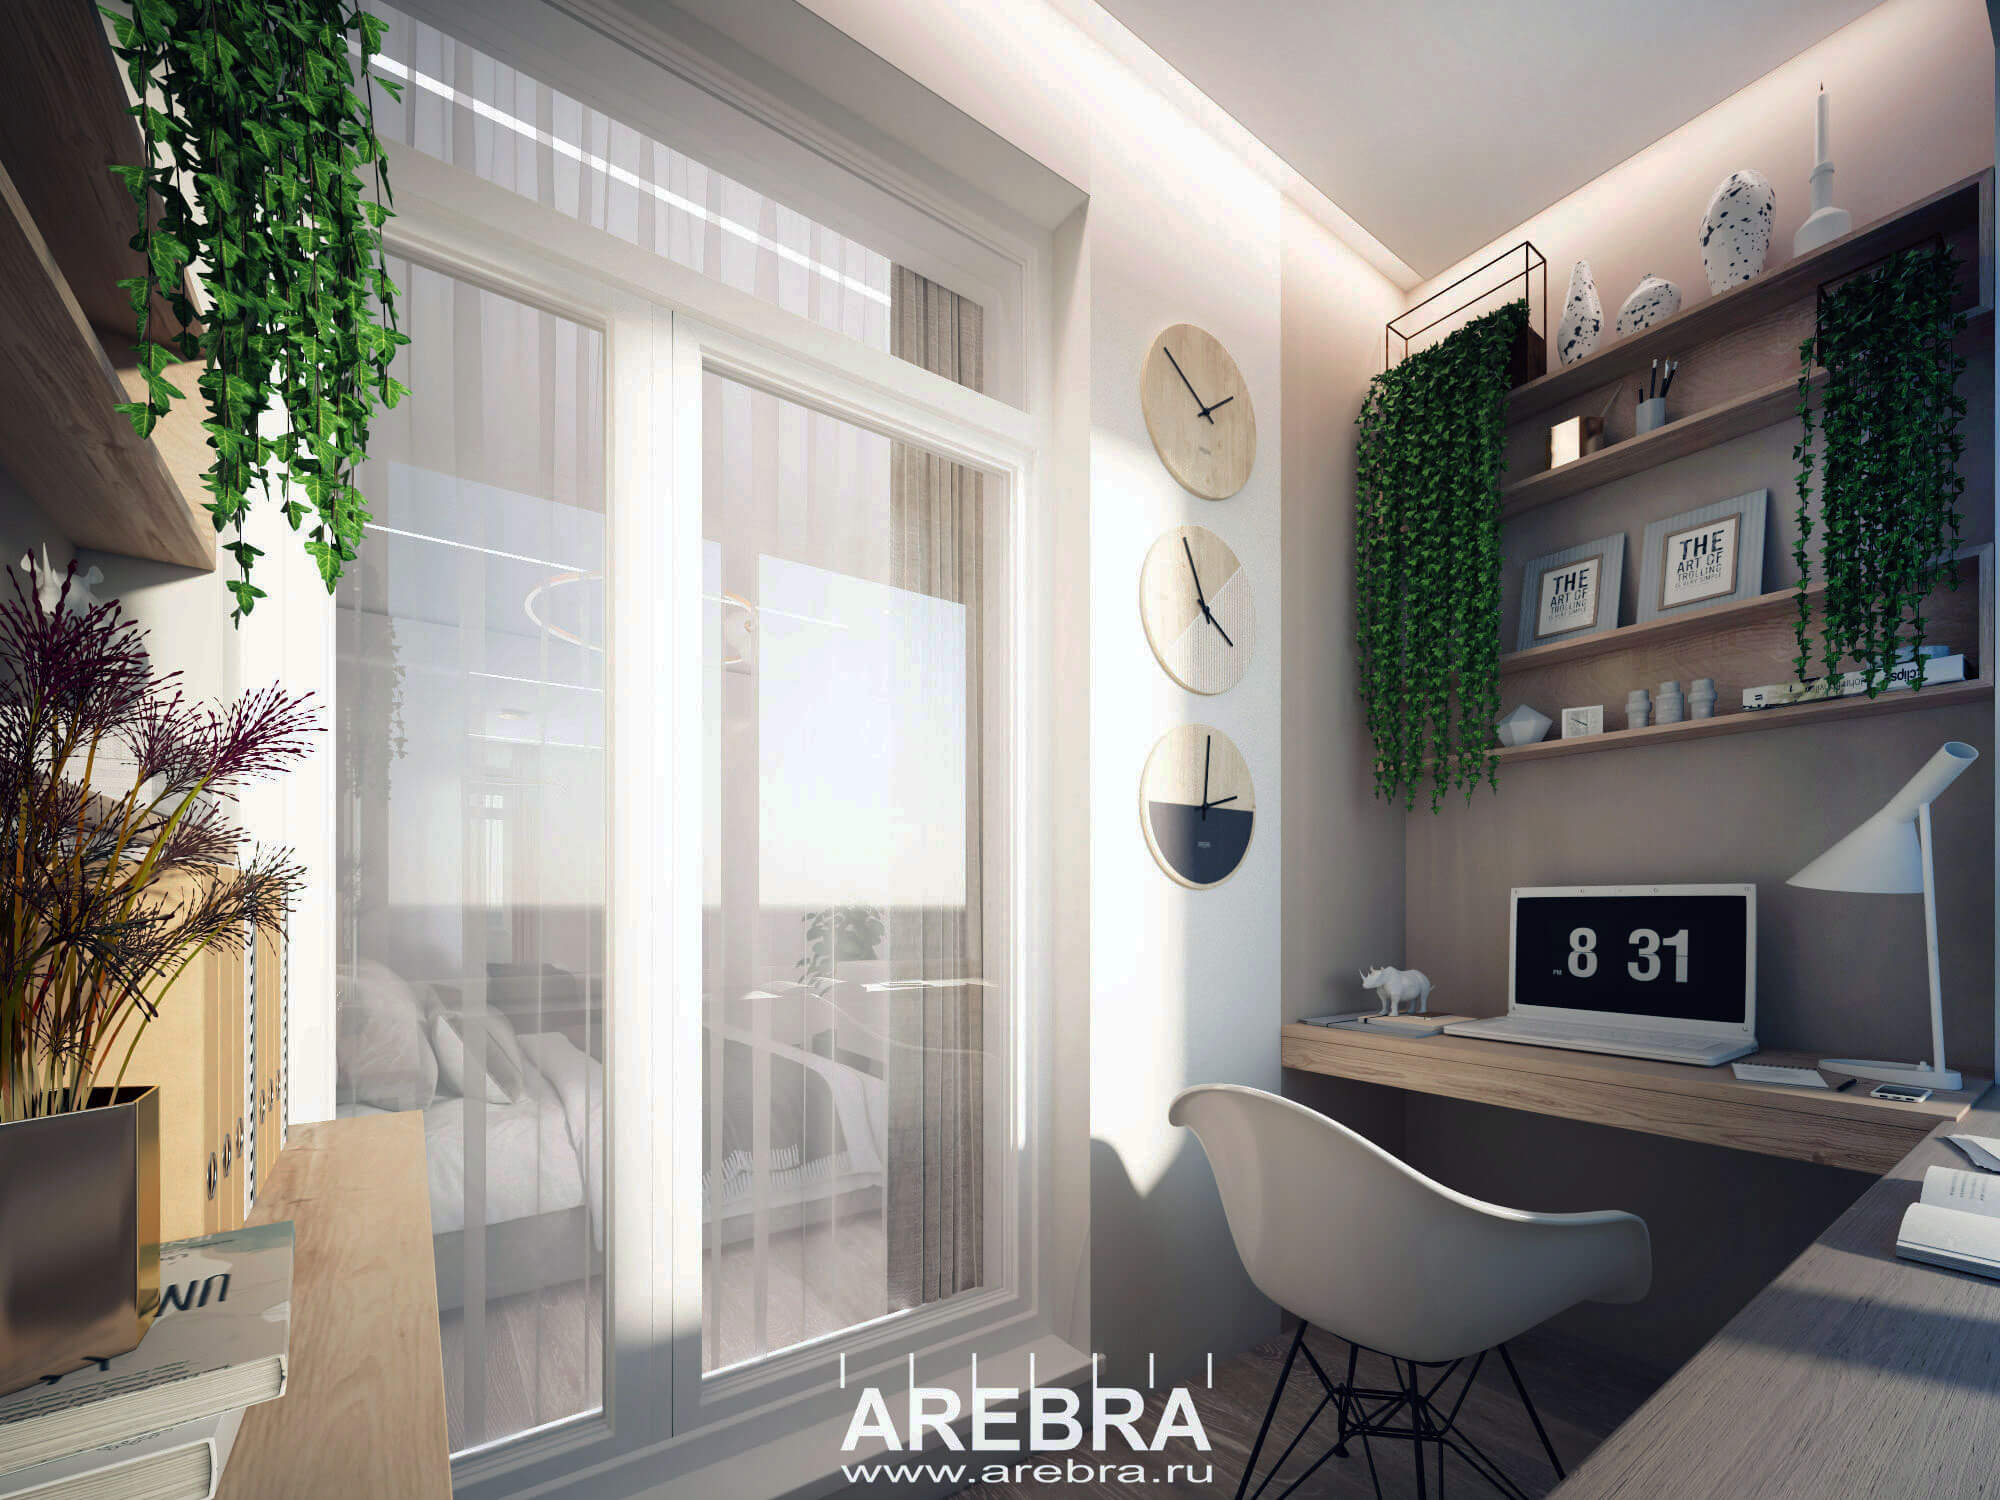 Дизайн проект интерьера двухкомнатной квартиры общей площадью 67,5м2 в ЖК Новое Купчино, г. Санкт-Петербург